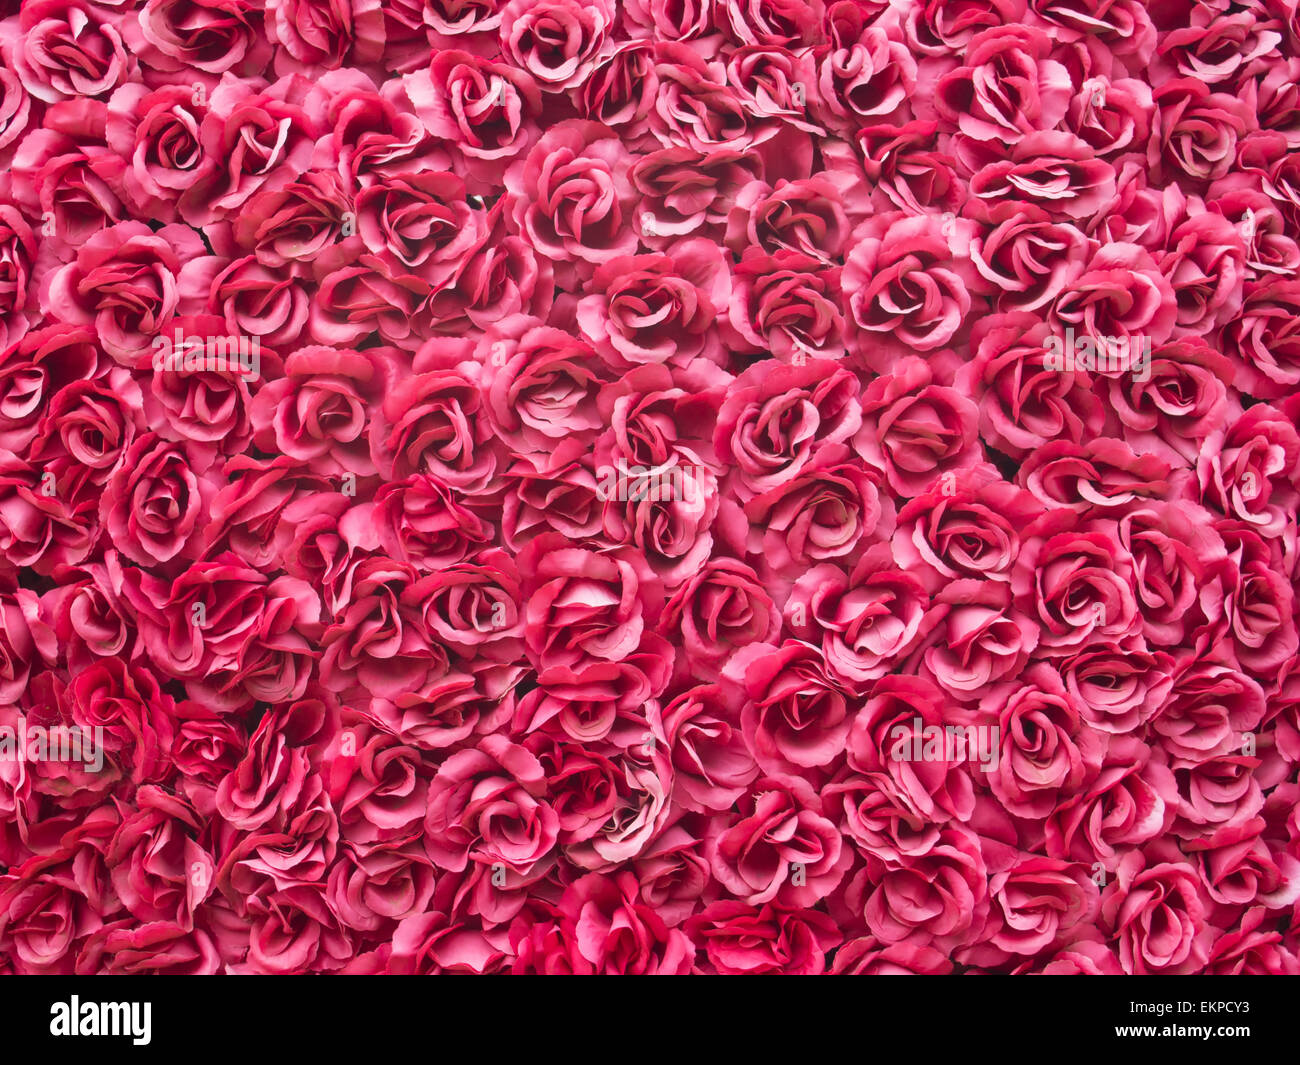 Arrière-plan de roses rouges Banque D'Images